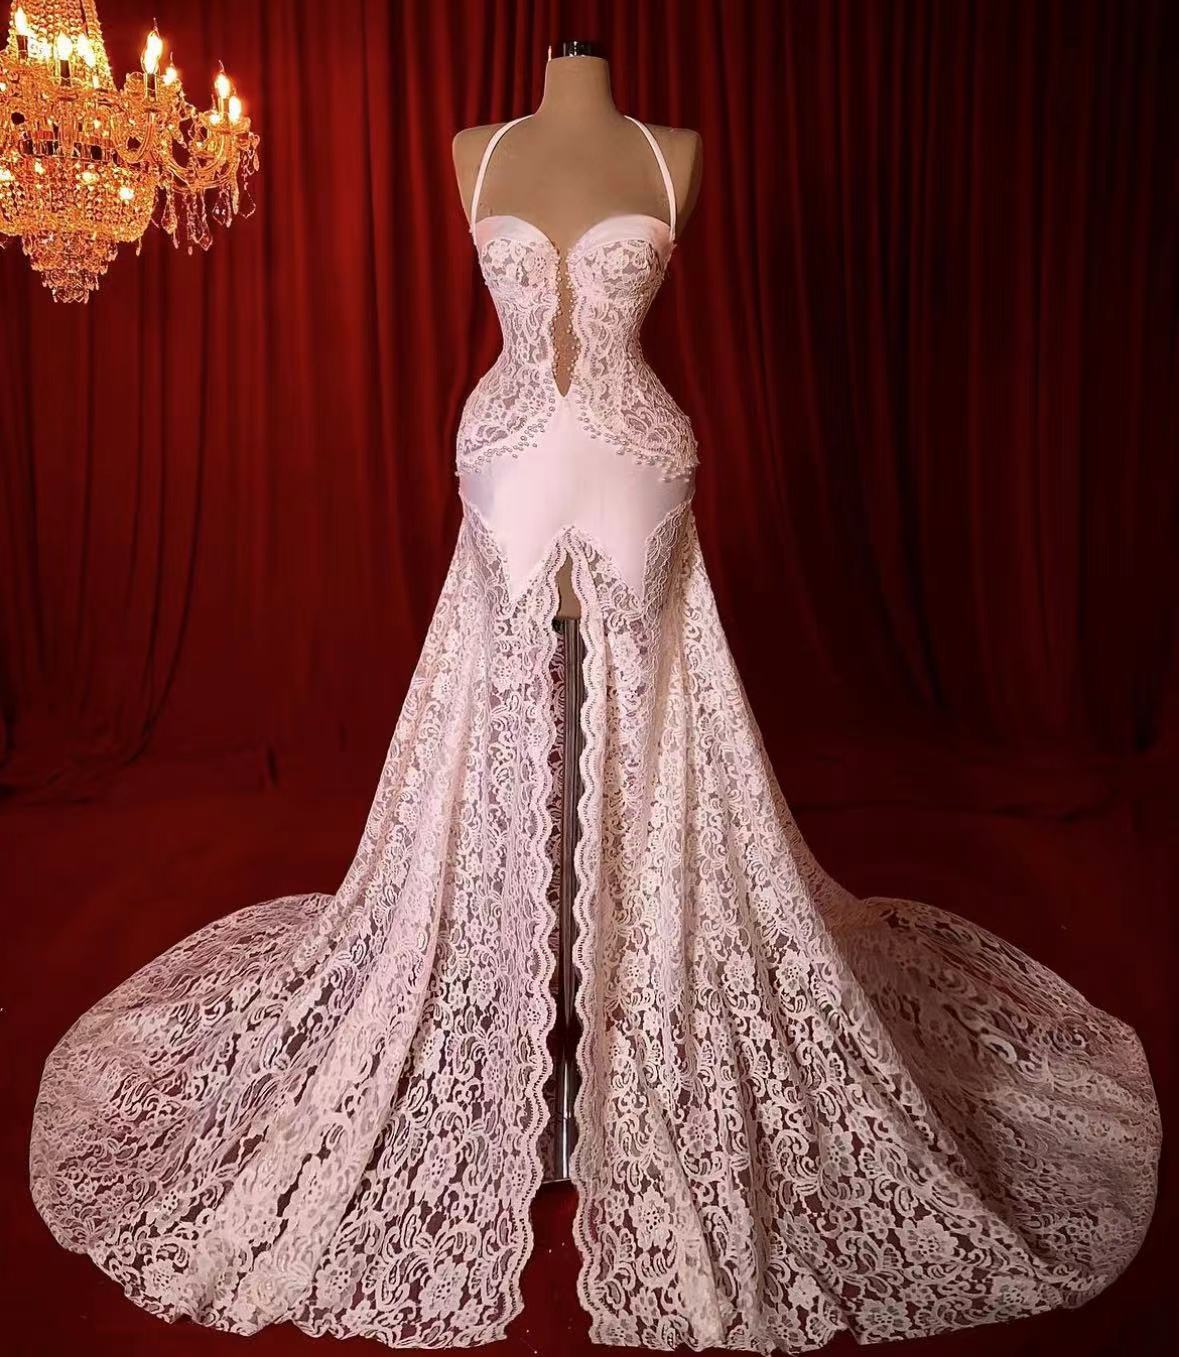 Lace Applique Wedding Dresses, Elegant Wedding Dresses, Halter Bridal Dresses, Vestidos De Novia, Casamento, A Line Wedding Dresses, Robes De